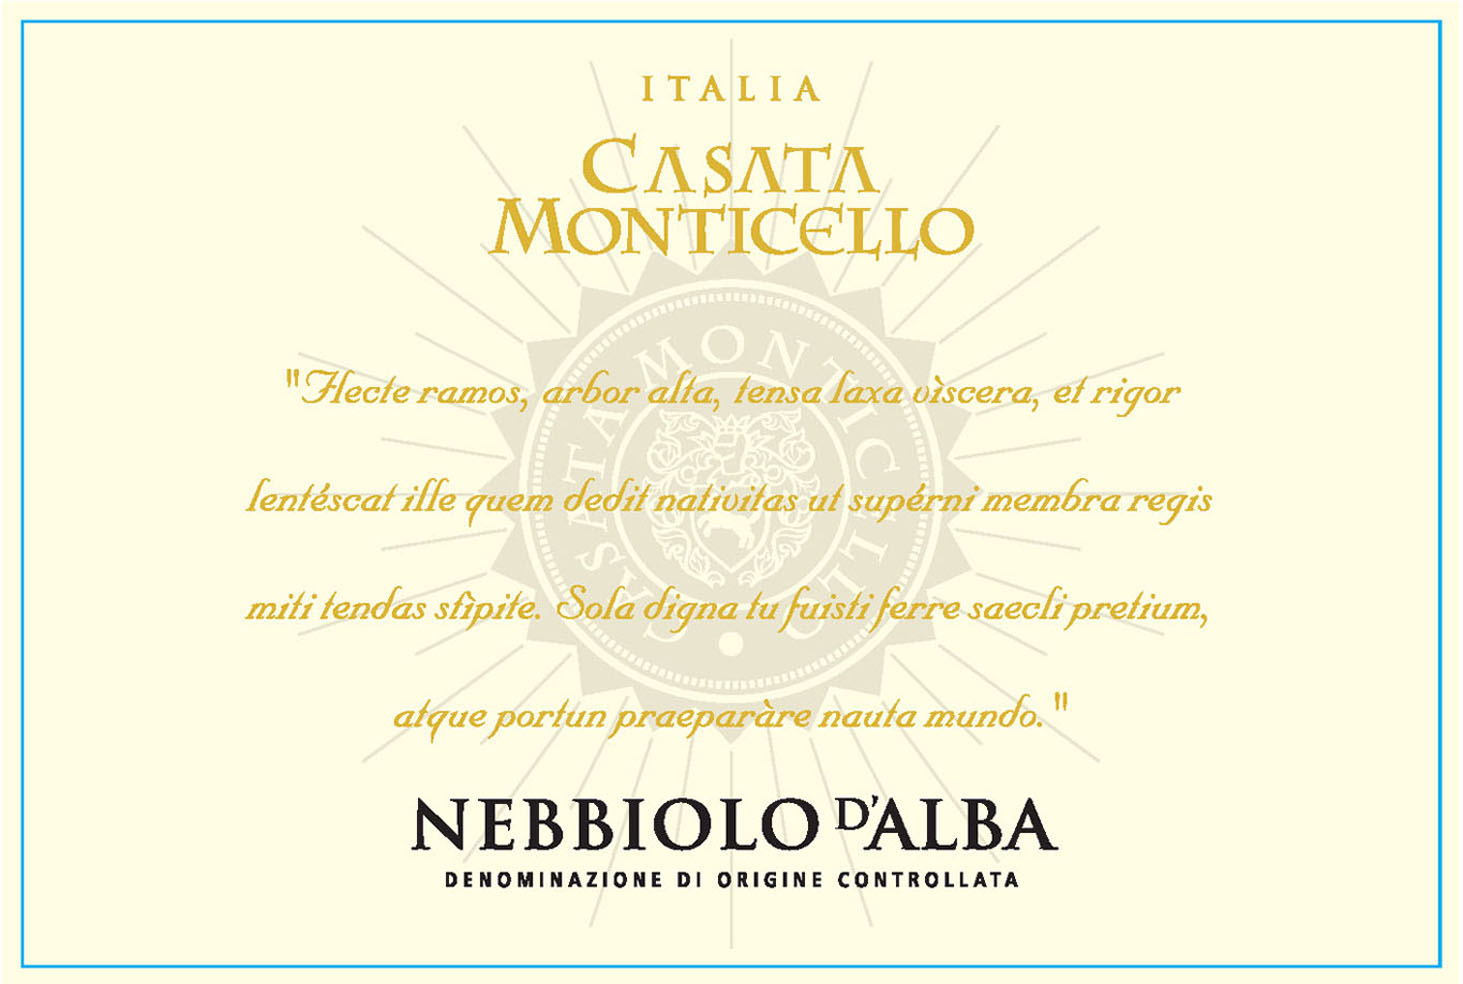 Casata Monticello - Nebbiolo D'Alba label